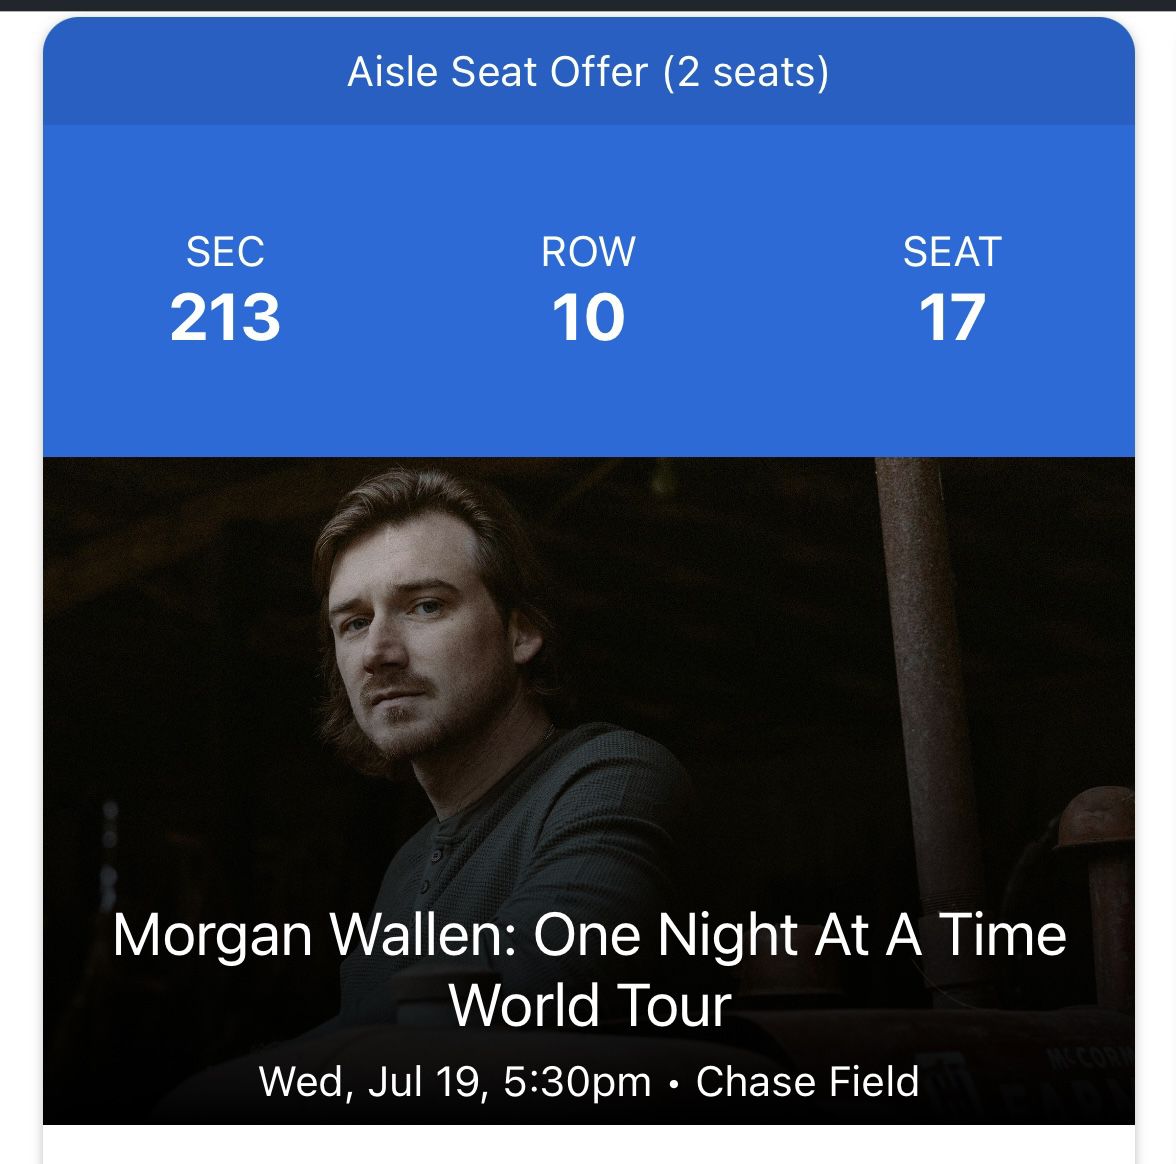 Morgan Wallen Tickets 